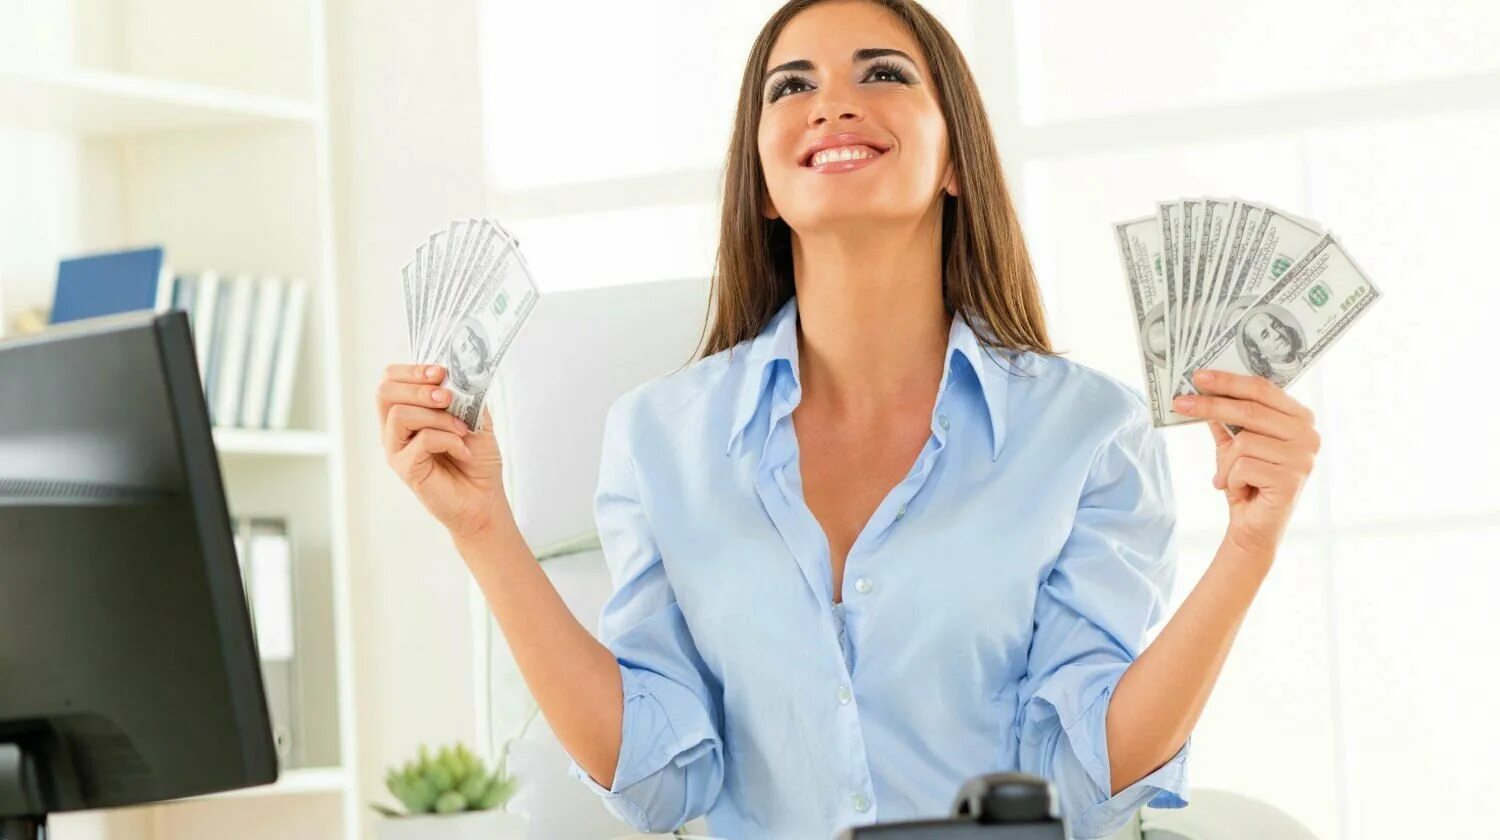 Получите свой первый доход. Успешная женщина с деньгами. Женщина бизнесмен. Работа и деньги. Интересная работа высокооплачиваемая для женщин.